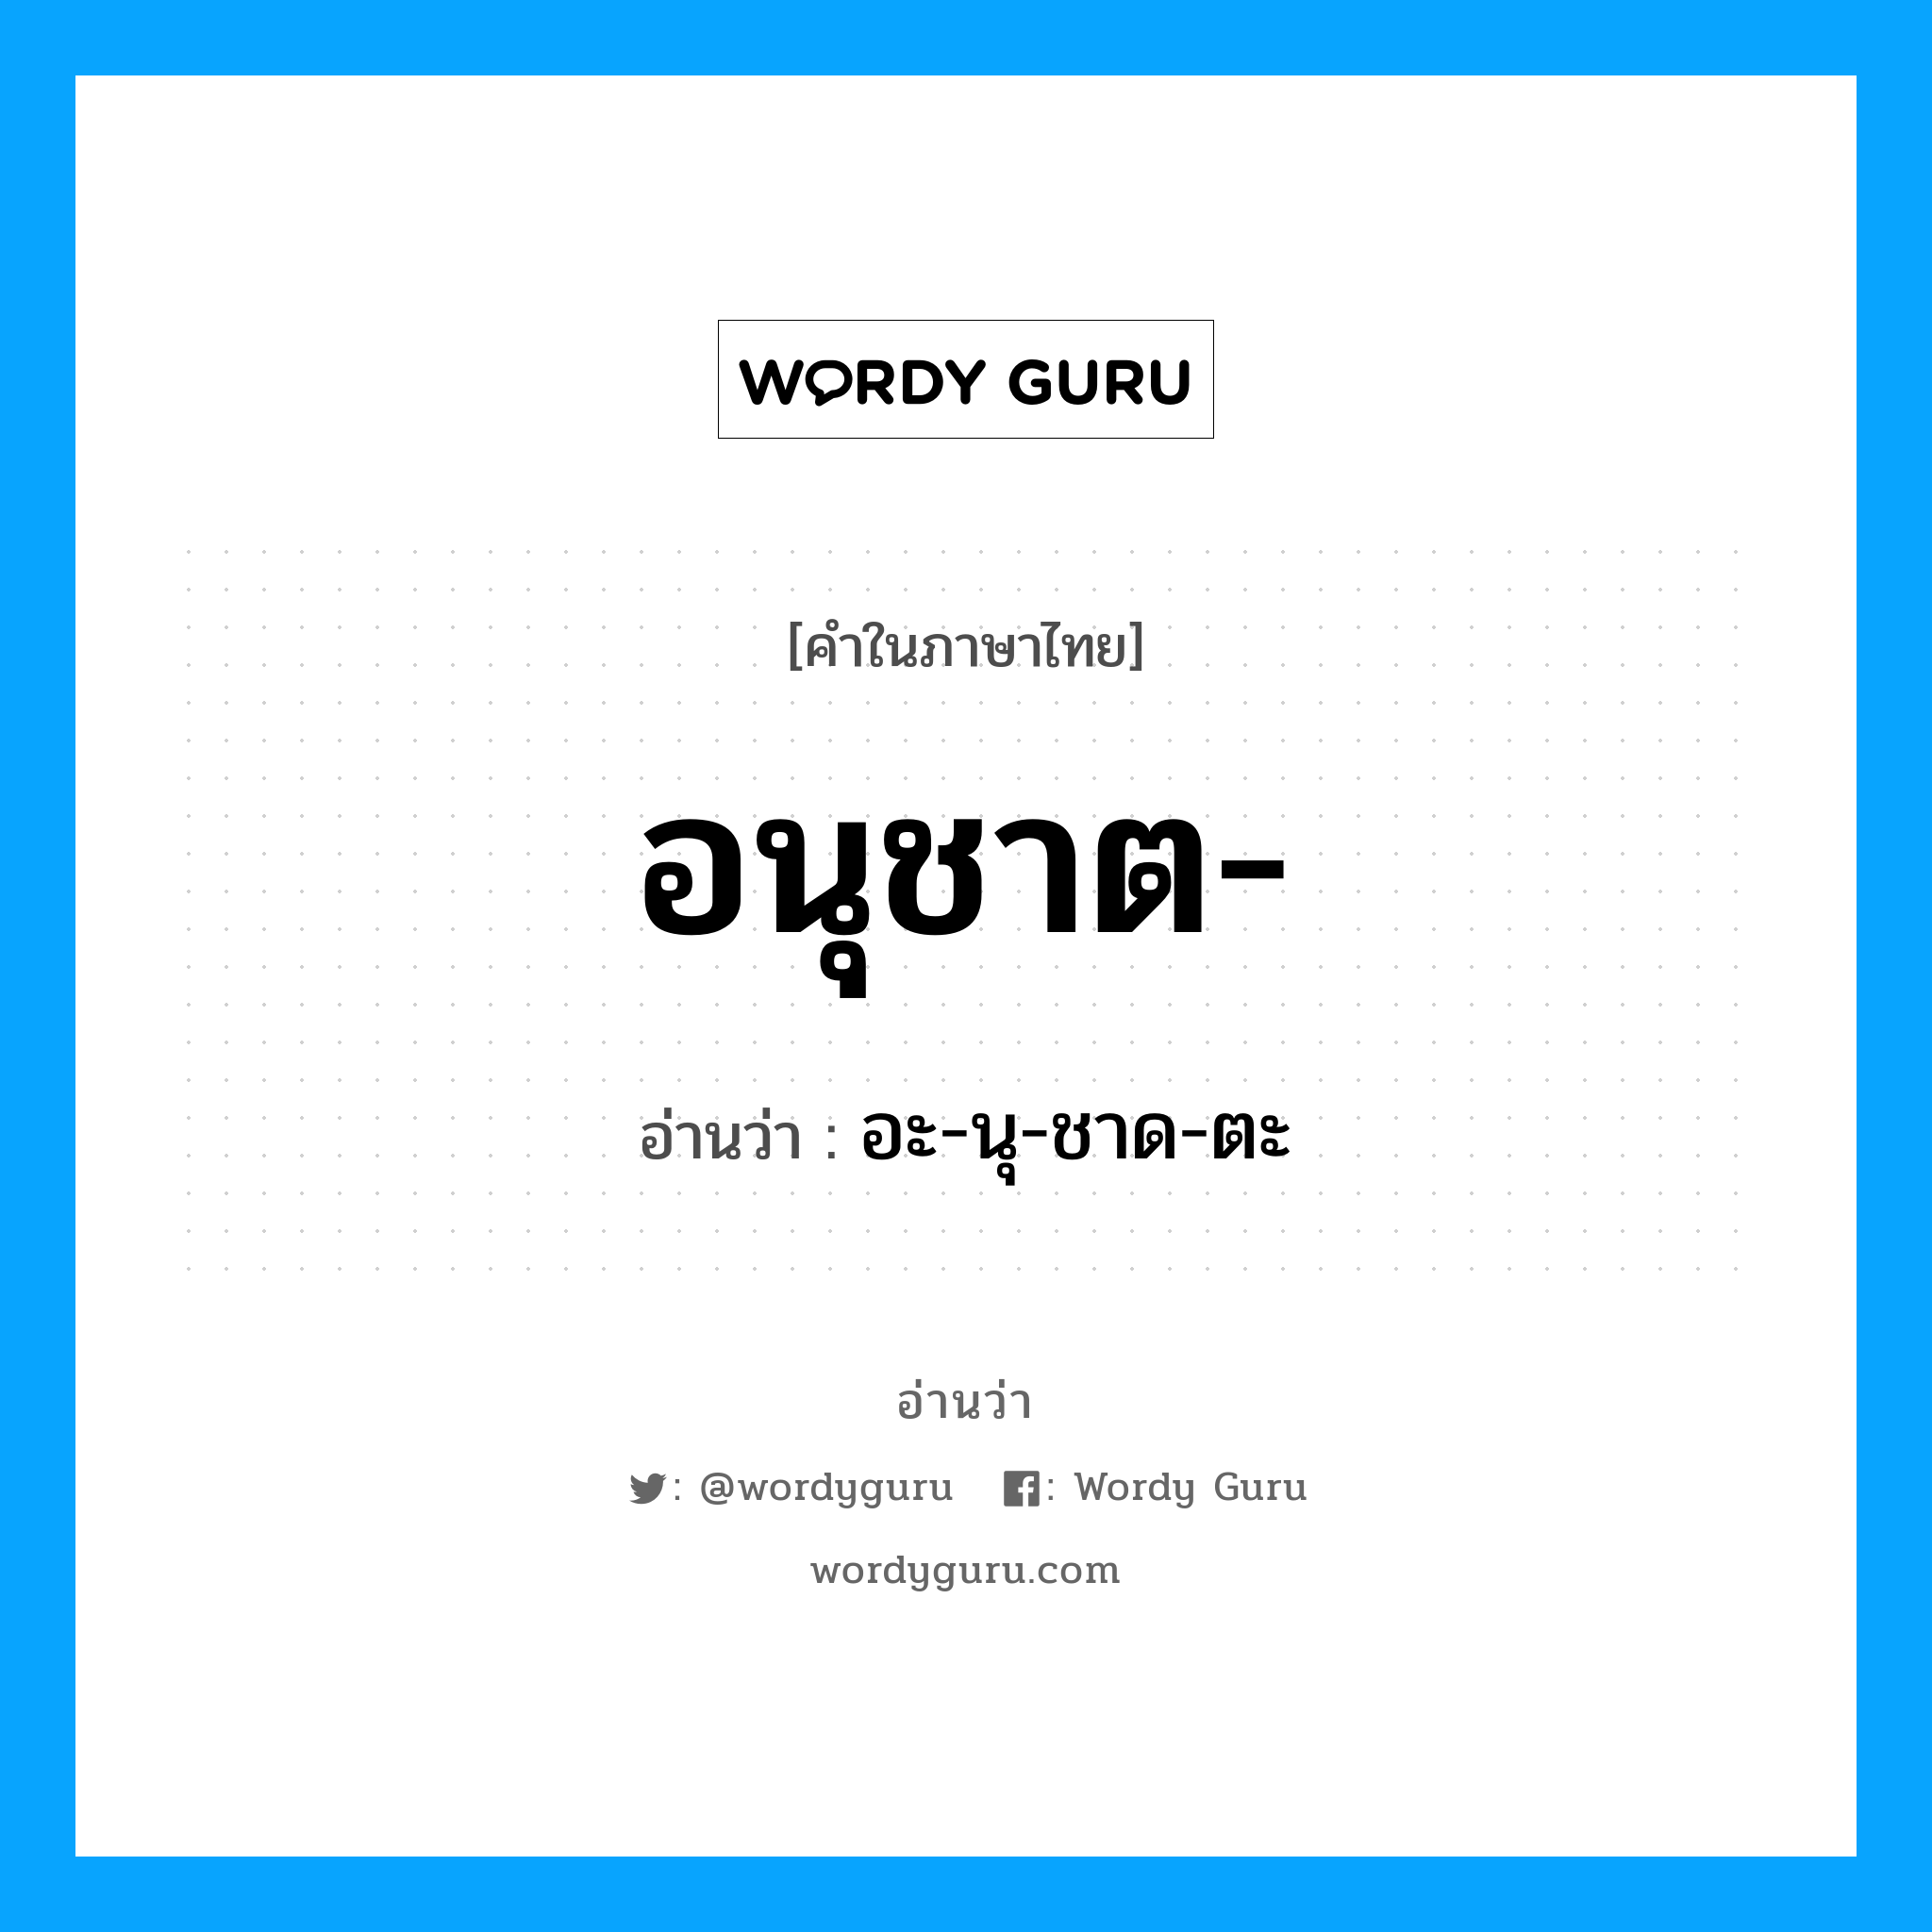 อะ-นุ-ชาด-ตะ เป็นคำอ่านของคำไหน?, คำในภาษาไทย อะ-นุ-ชาด-ตะ อ่านว่า อนุชาต-